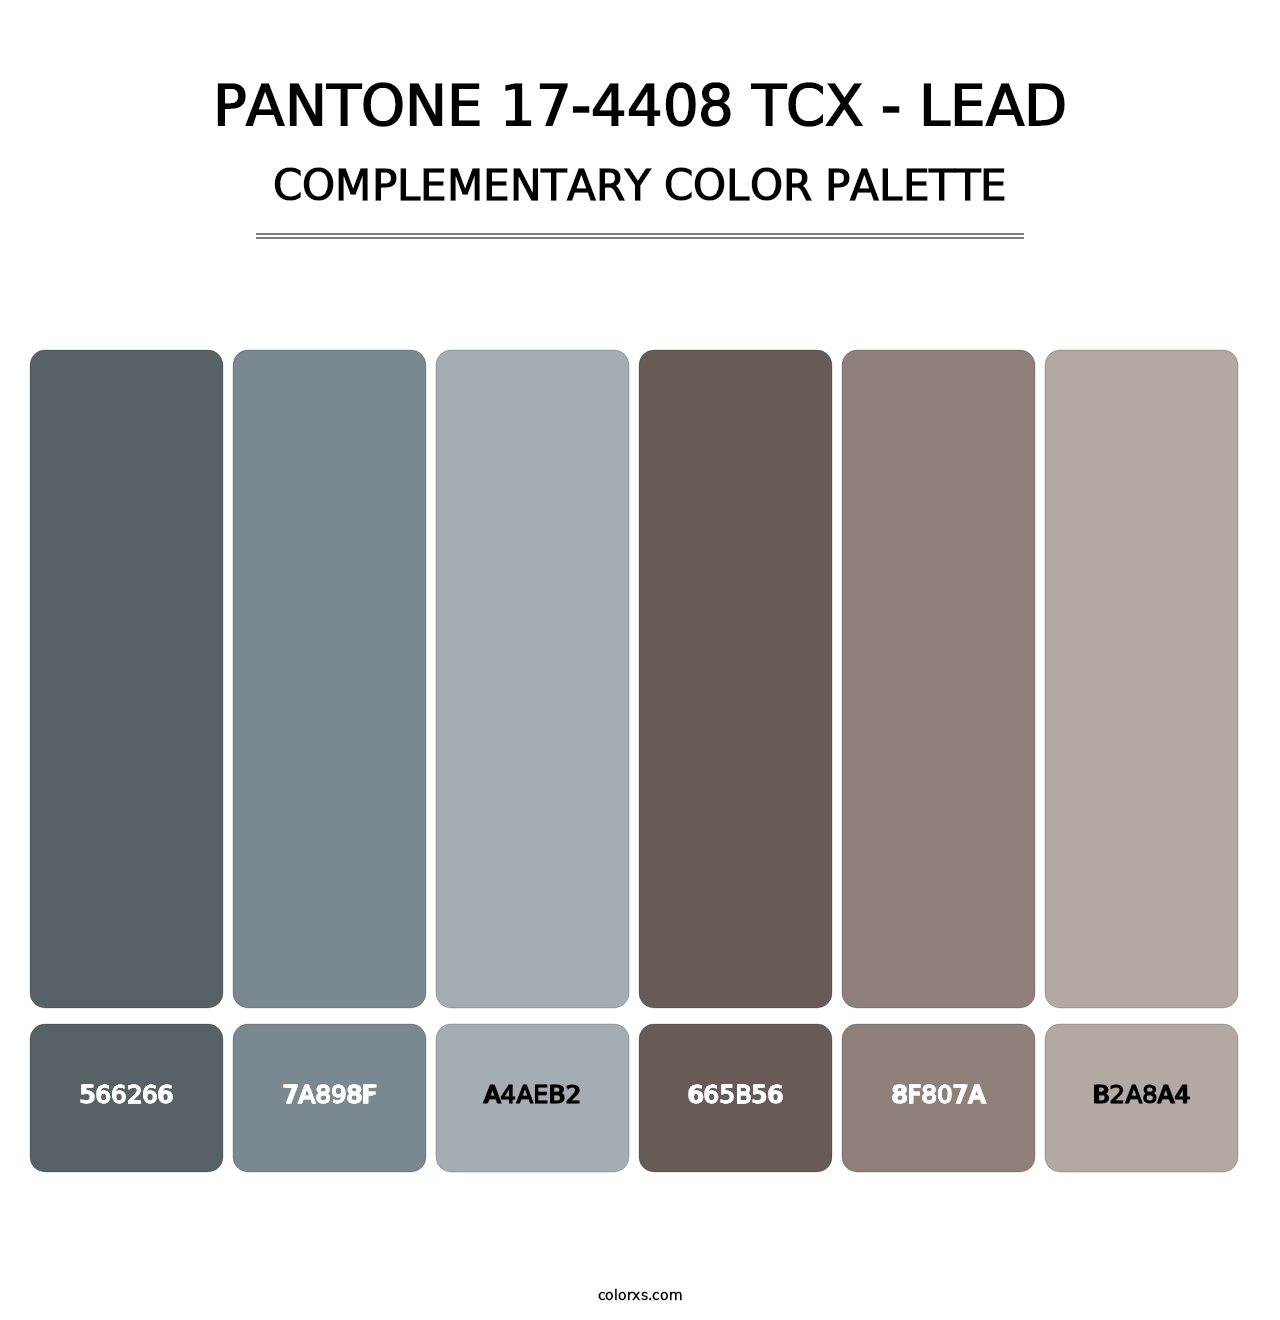 PANTONE 17-4408 TCX - Lead - Complementary Color Palette